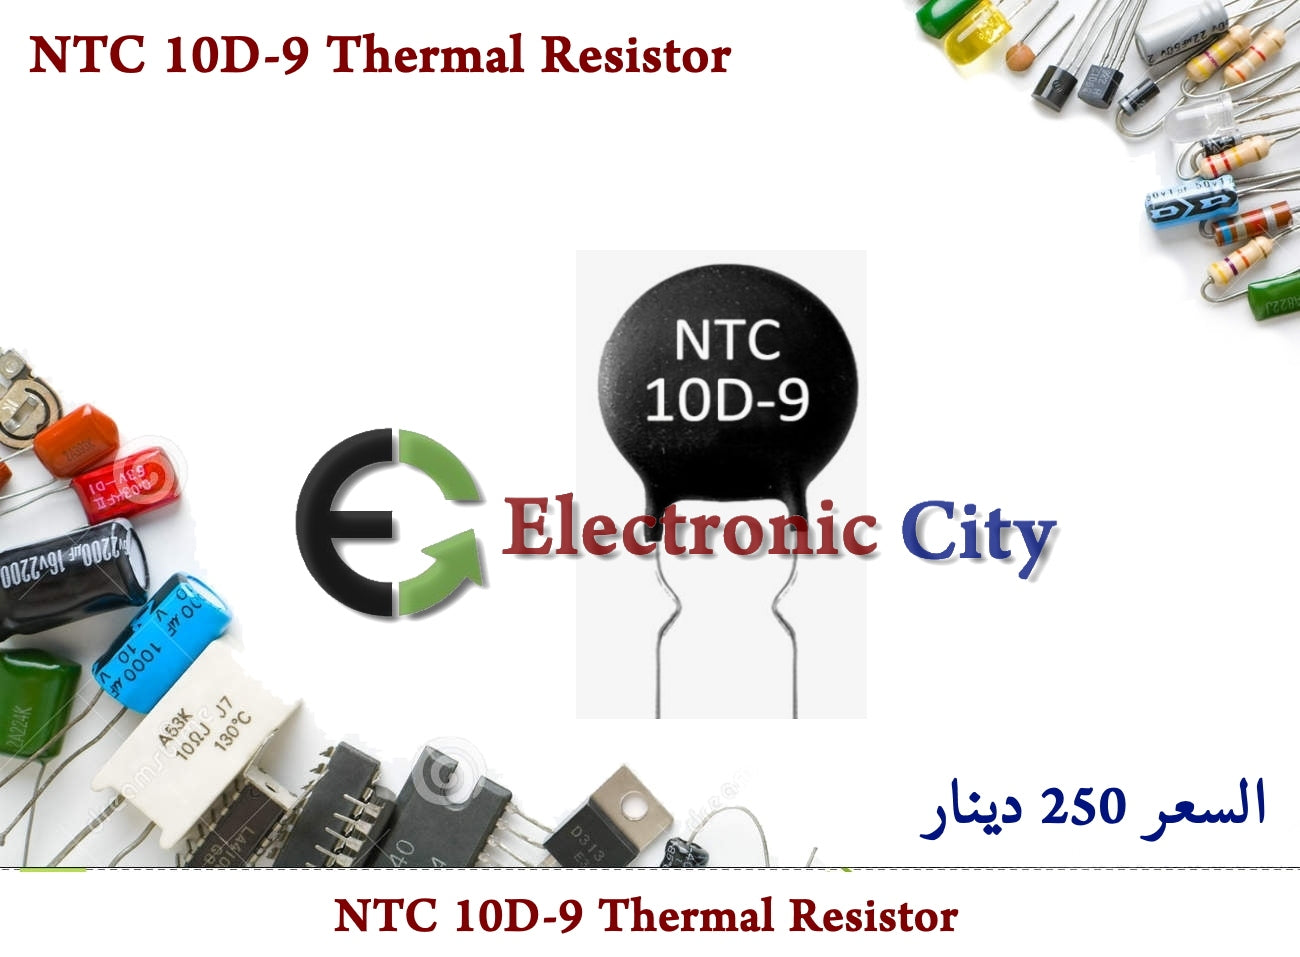 NTC 10D-9 Thermal Resistor